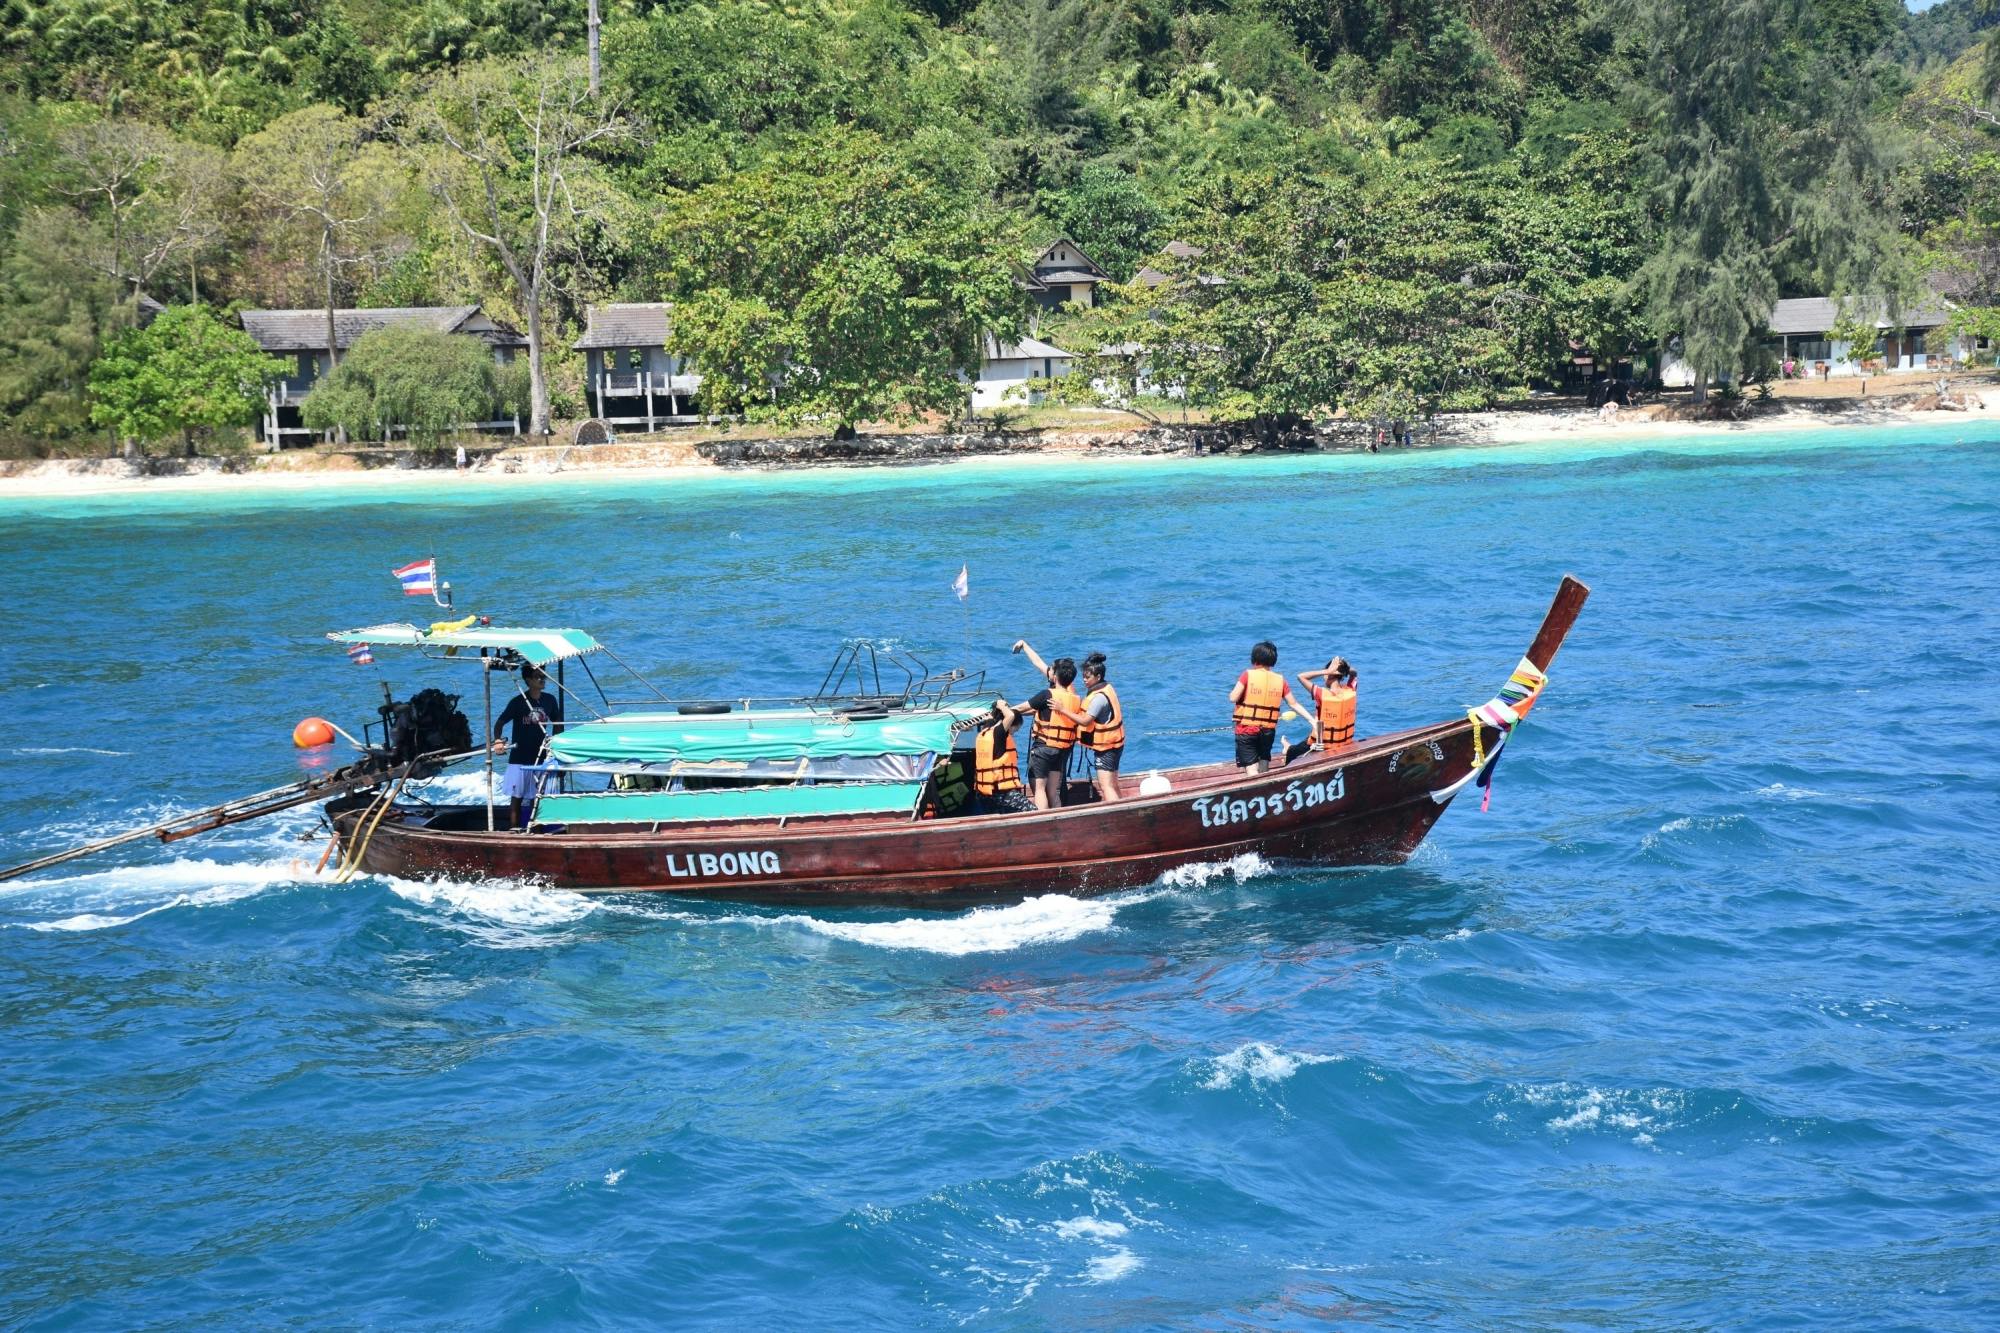 Tour en barco de cola larga a 4 islas y la Cueva Esmeralda desde Koh Lanta